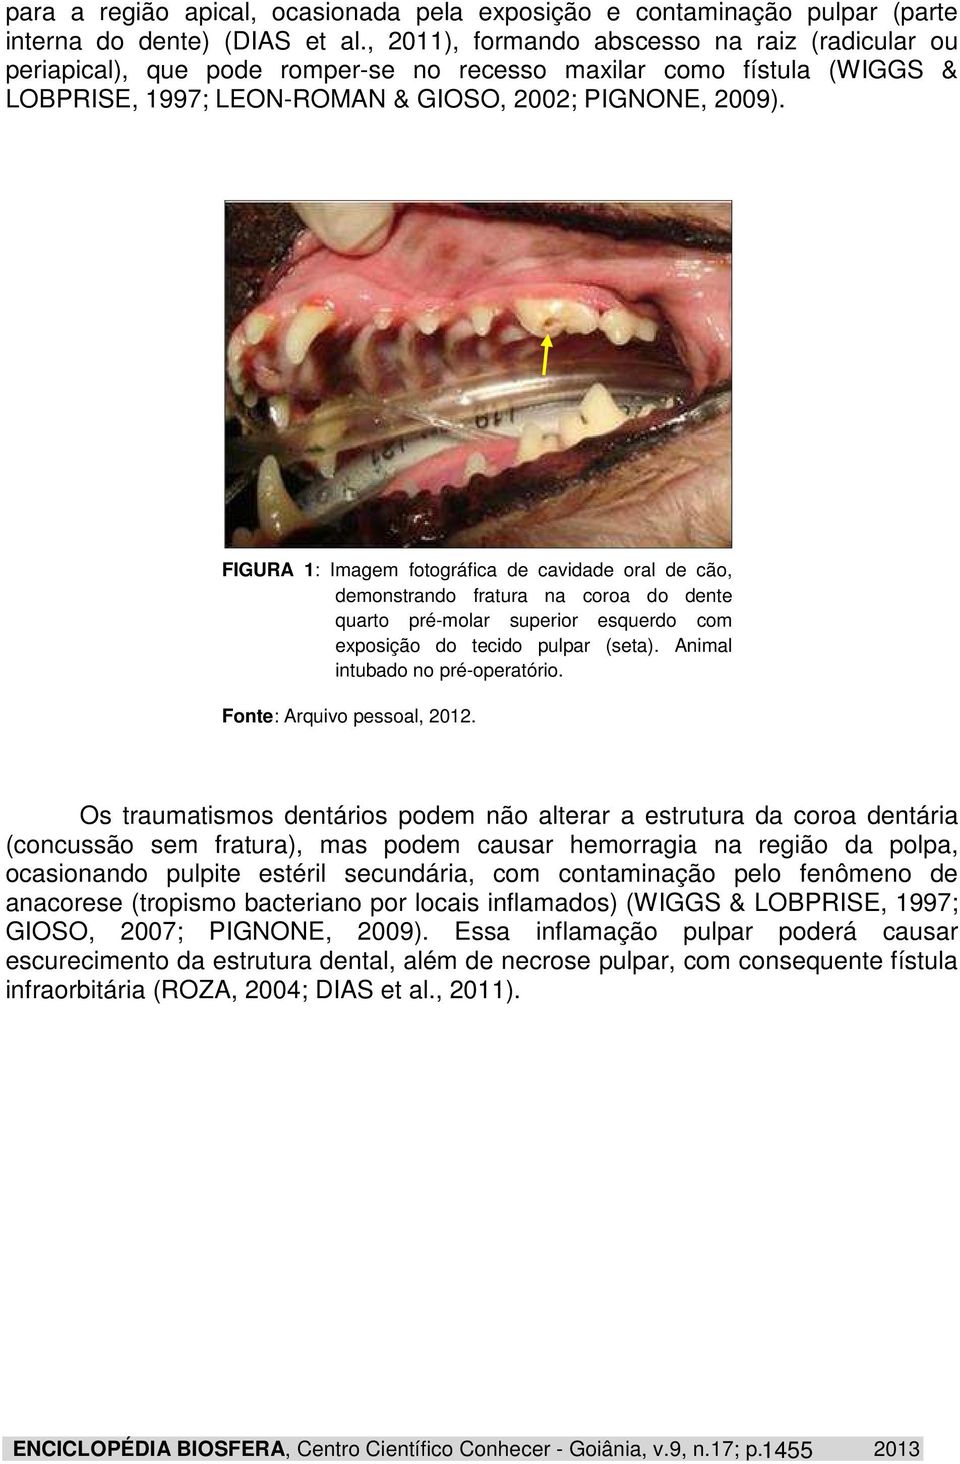 FIGURA 1: Imagem fotográfica de cavidade oral de cão, demonstrando fratura na coroa do dente quarto pré-molar superior esquerdo com exposição do tecido pulpar (seta).